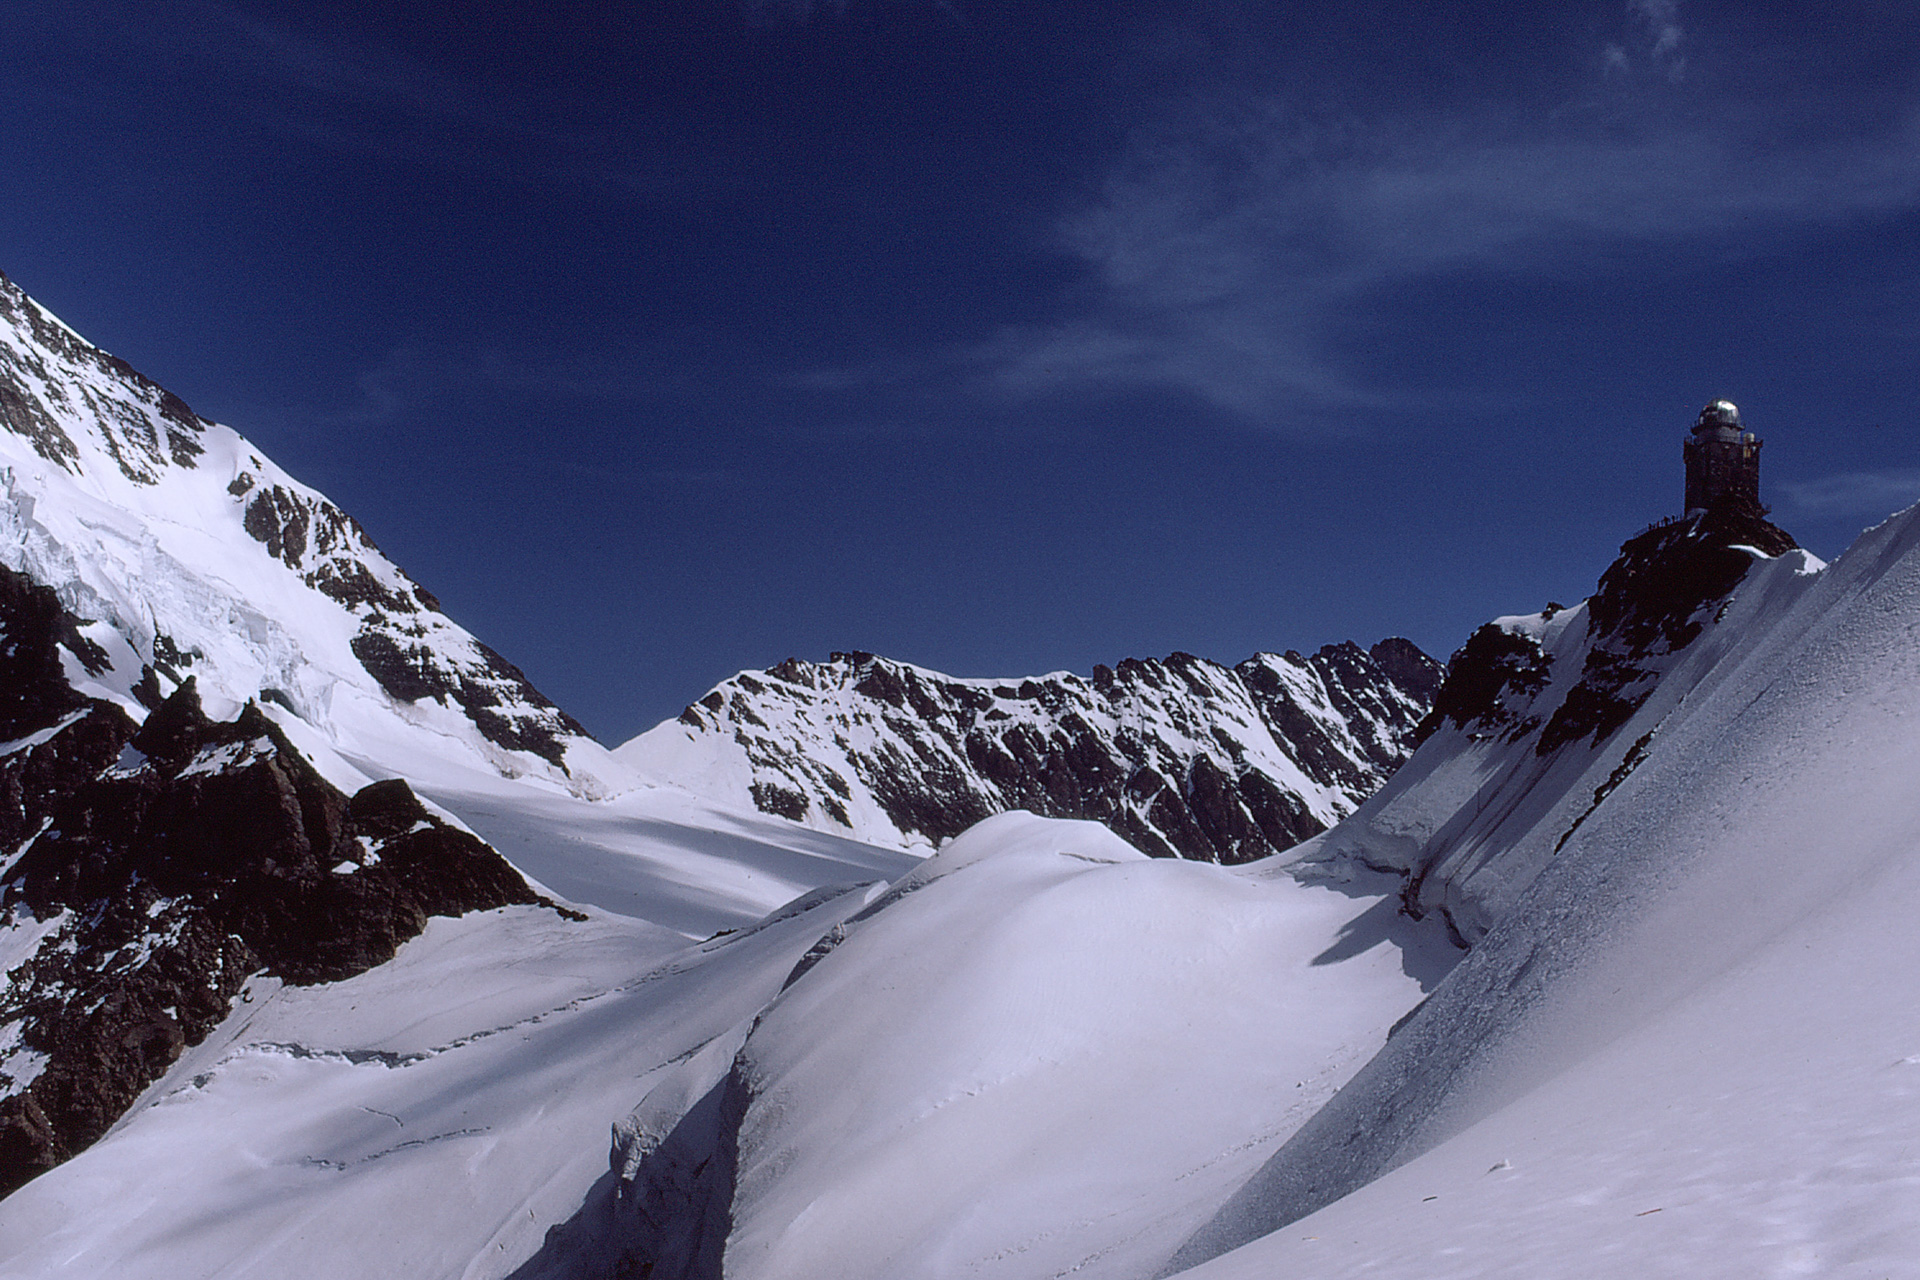 1972 Jungfraujoch, Sphinx (Diapositiv)